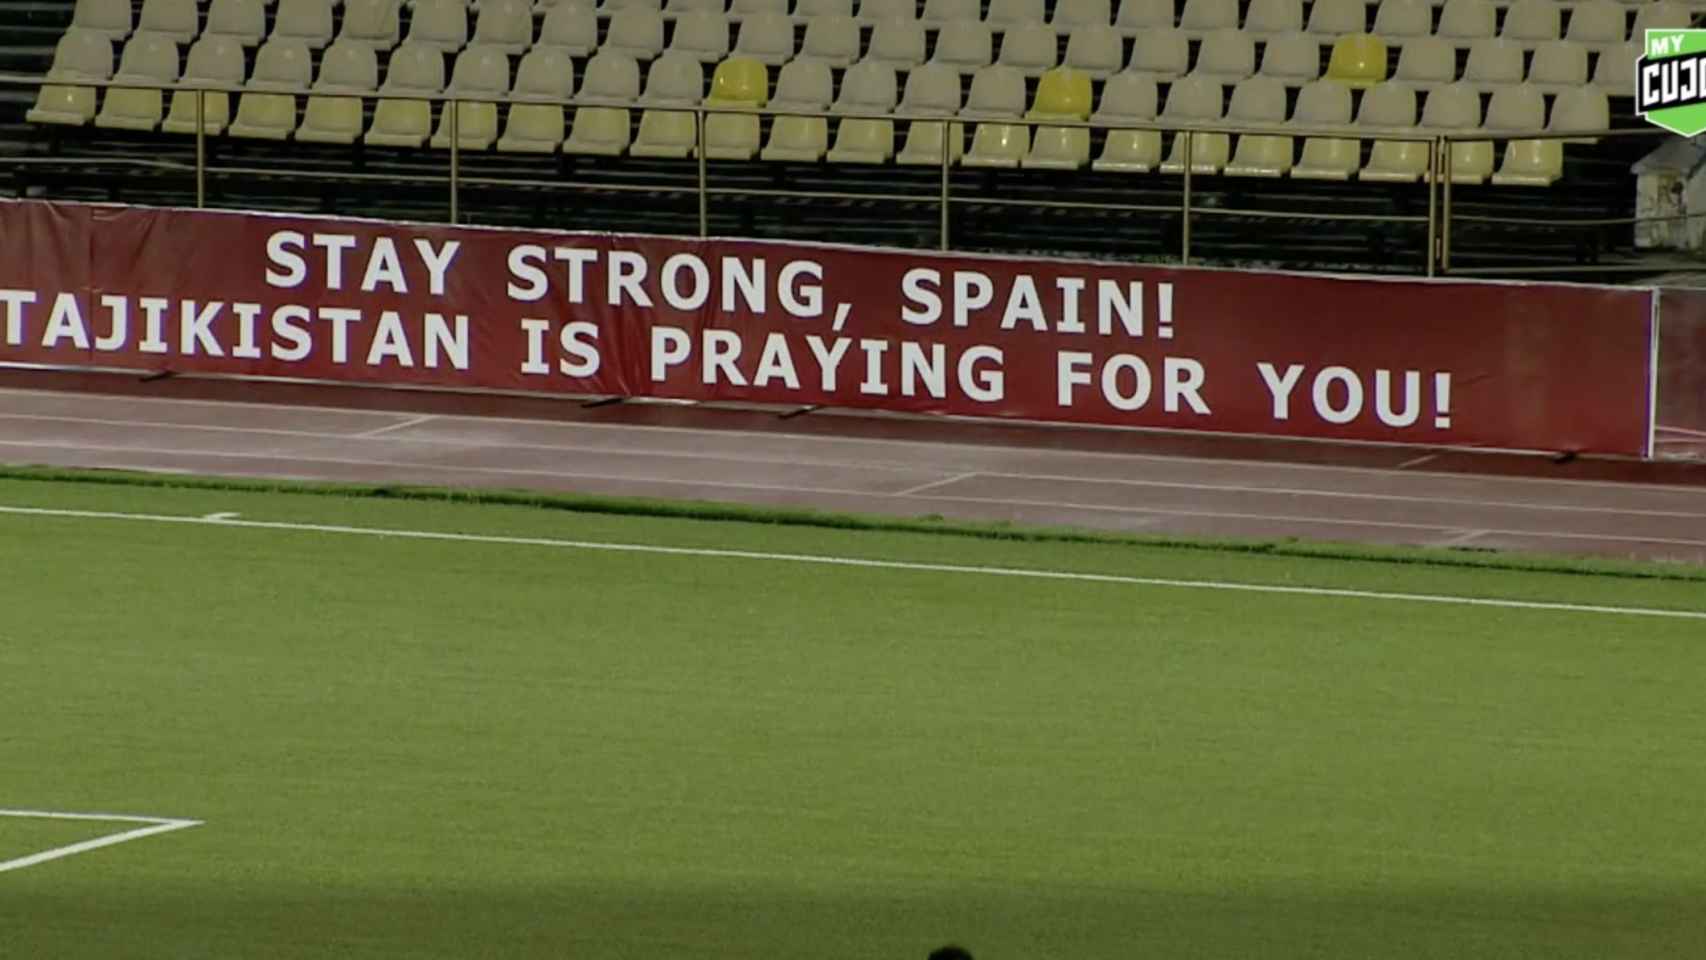 La publicidad en la liga de fútbol de Tayikistán manda un mensaje de ánimo a España